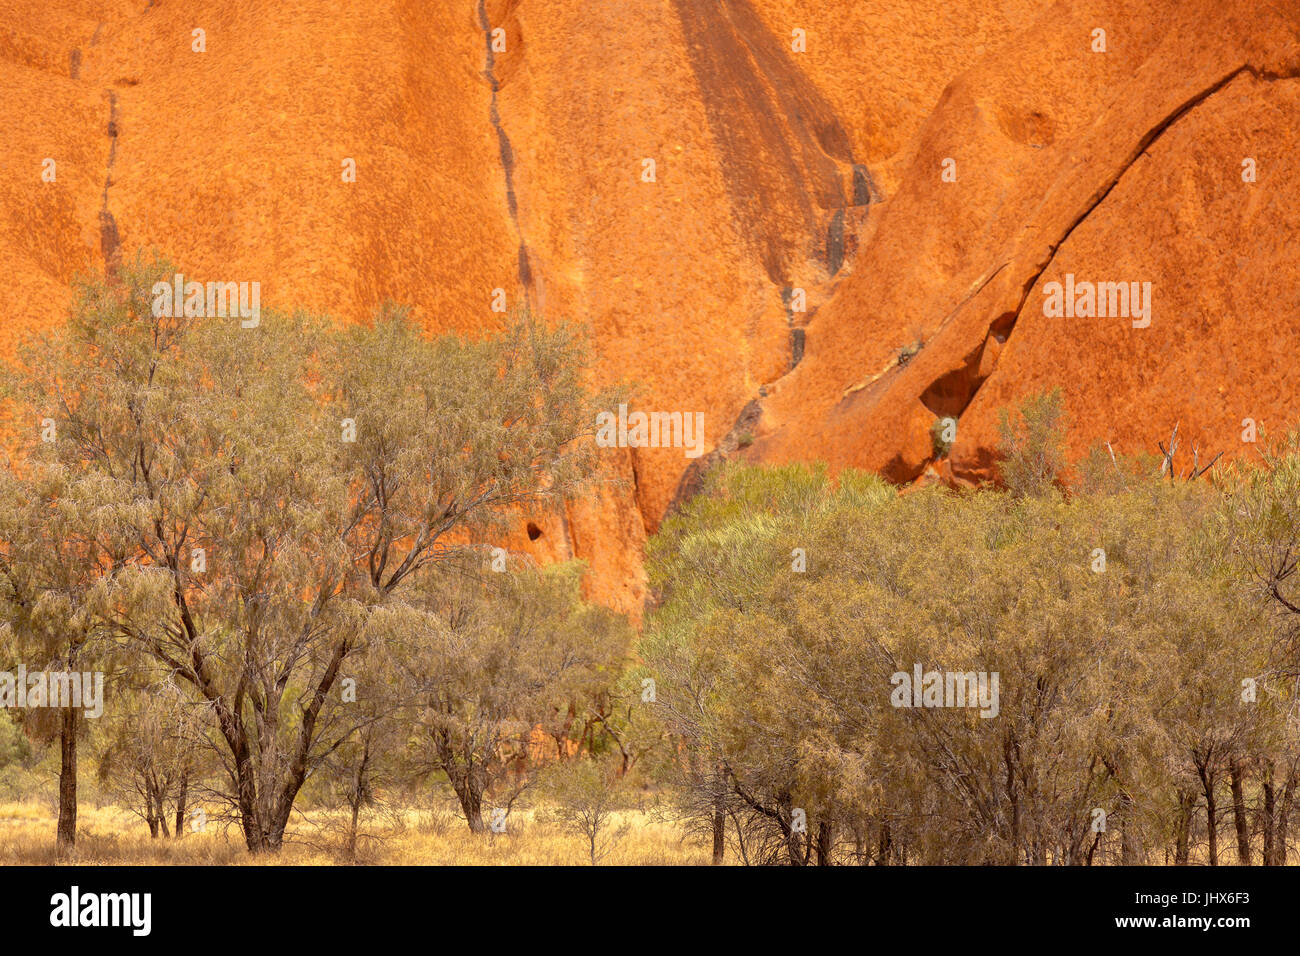 Uluru, (Ayers Rock), schließen Sie die Aussicht auf die verschiedenen Bereiche rund um Uluru, Steingarten, Wasserstellen, Pfade, Felsen, Höhlen, Wasserfall Wanderwege, Vegetation ich Stockfoto